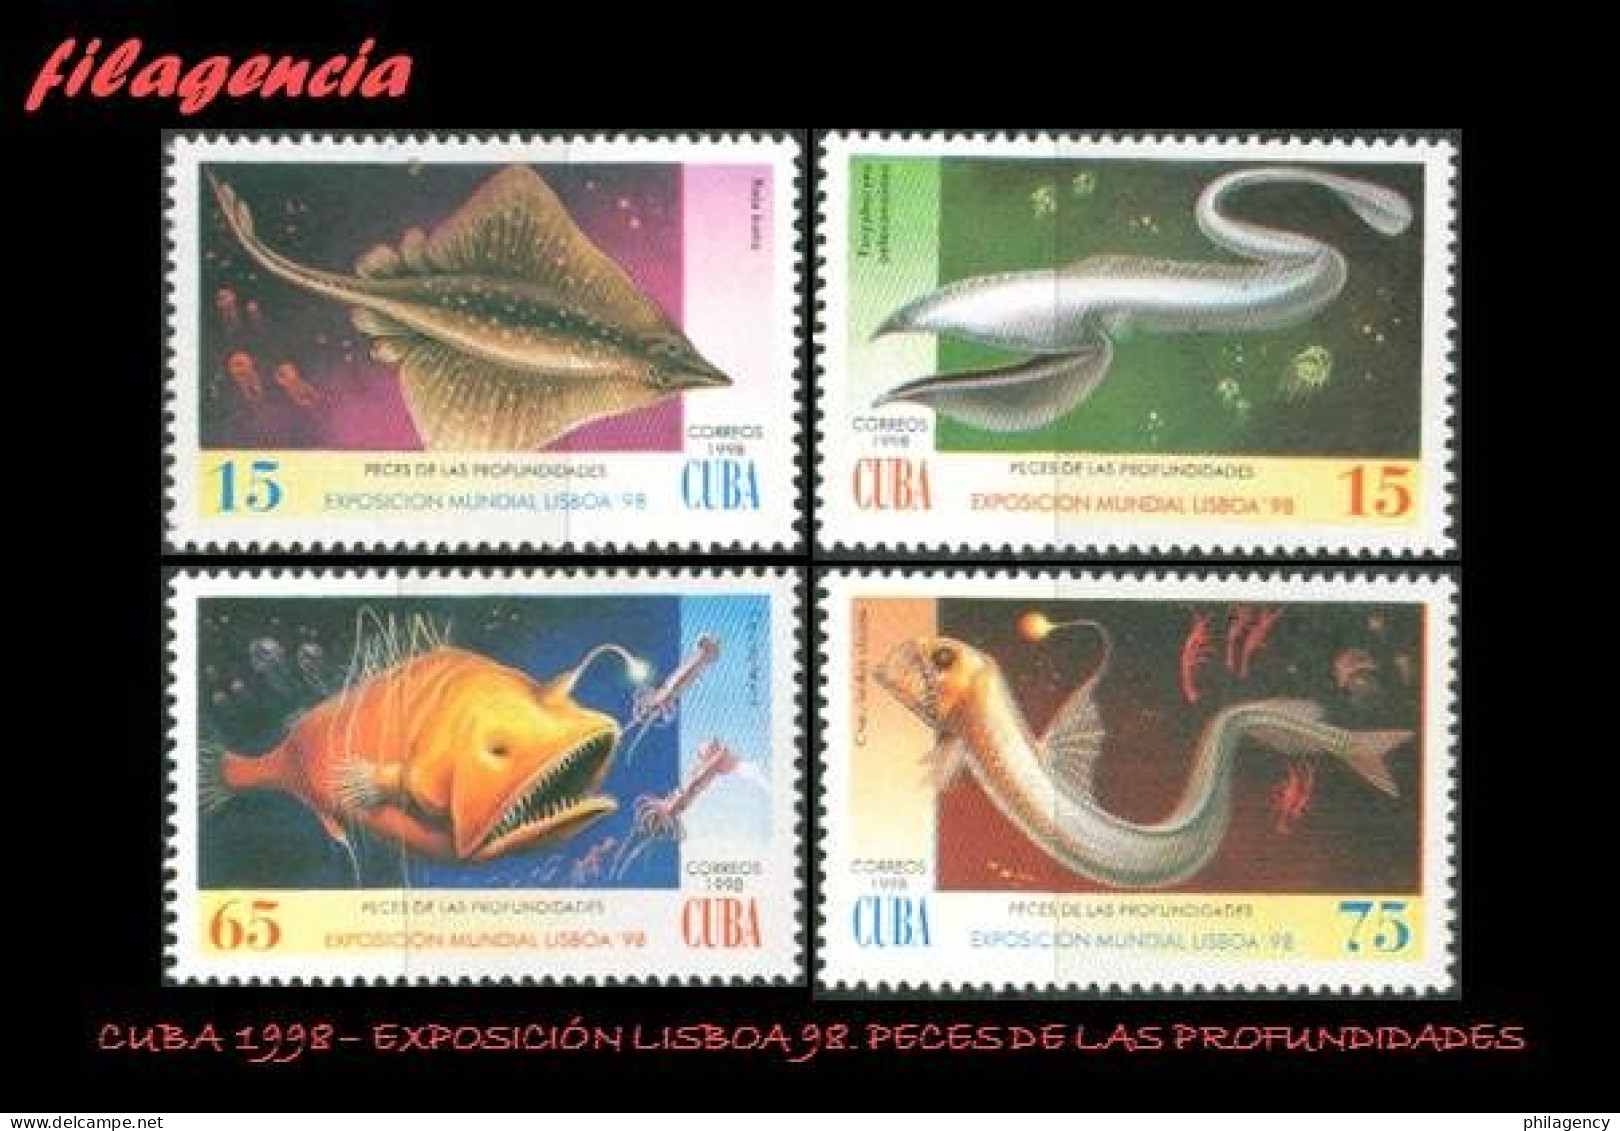 CUBA MINT. 1998-14 EXPOSICIÓN UNIVERSAL LISBOA 98. PECES DE LAS PROFUNDIDADES - Unused Stamps